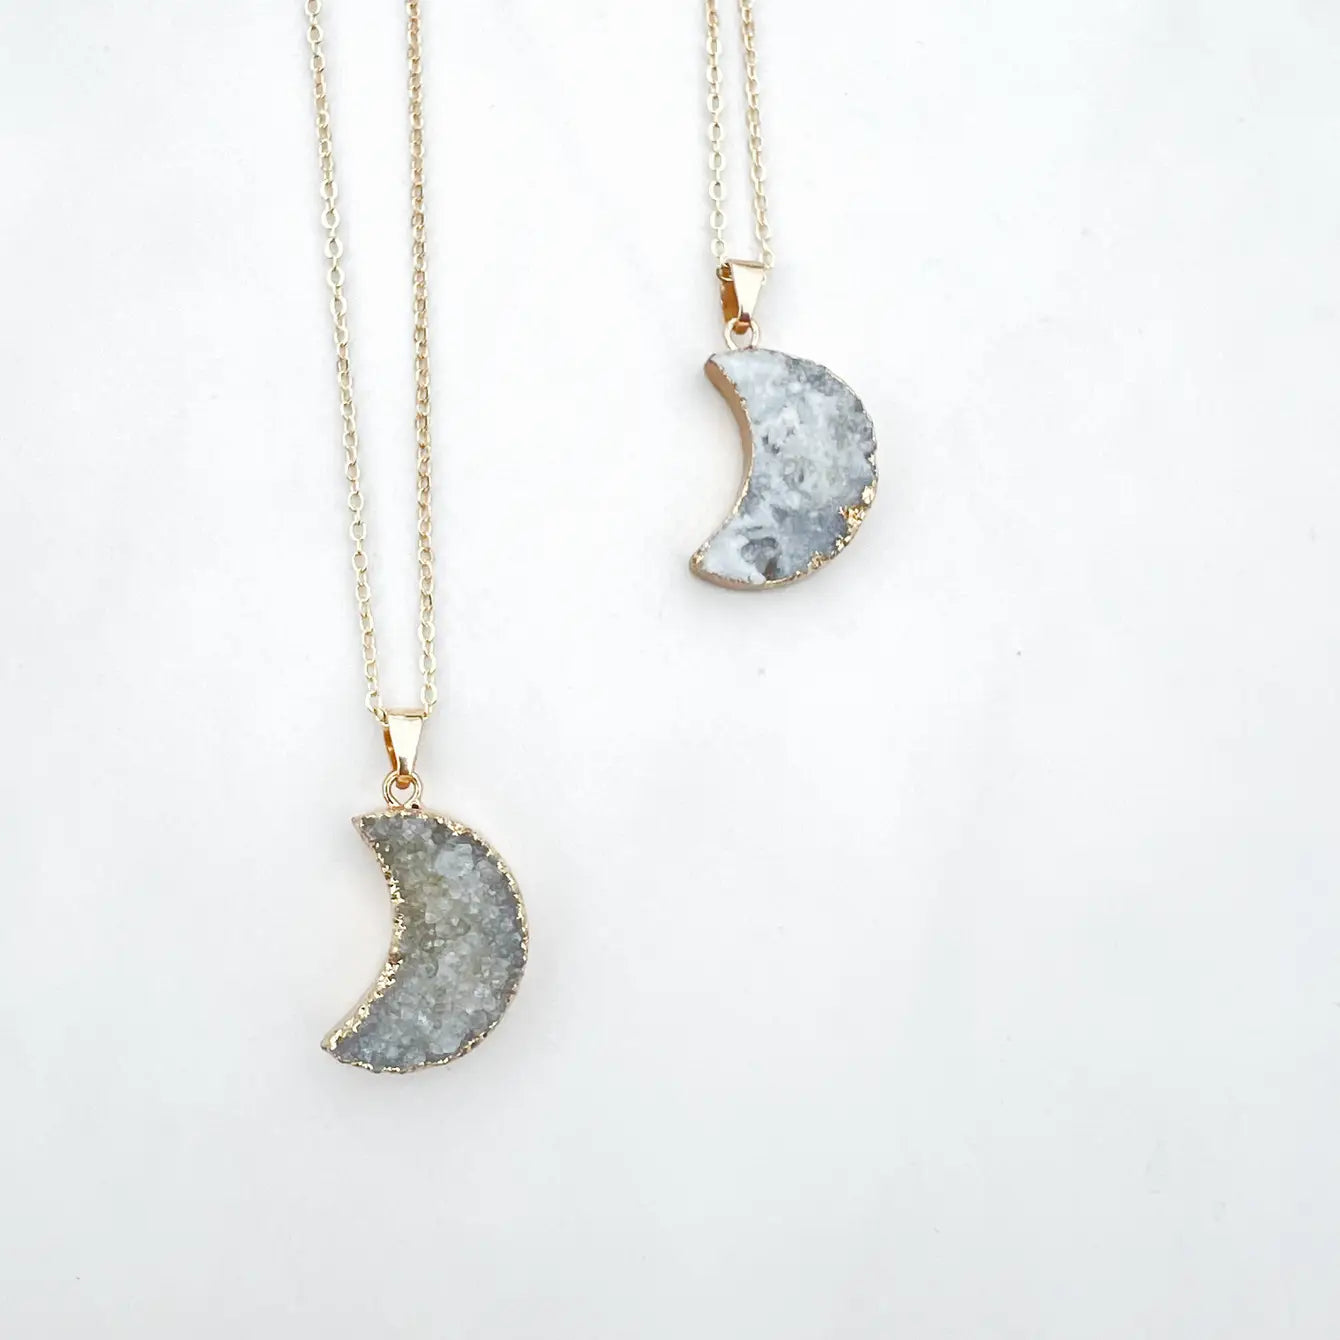 Druzy Agate Crescent Moon Necklace - 4 Pcs